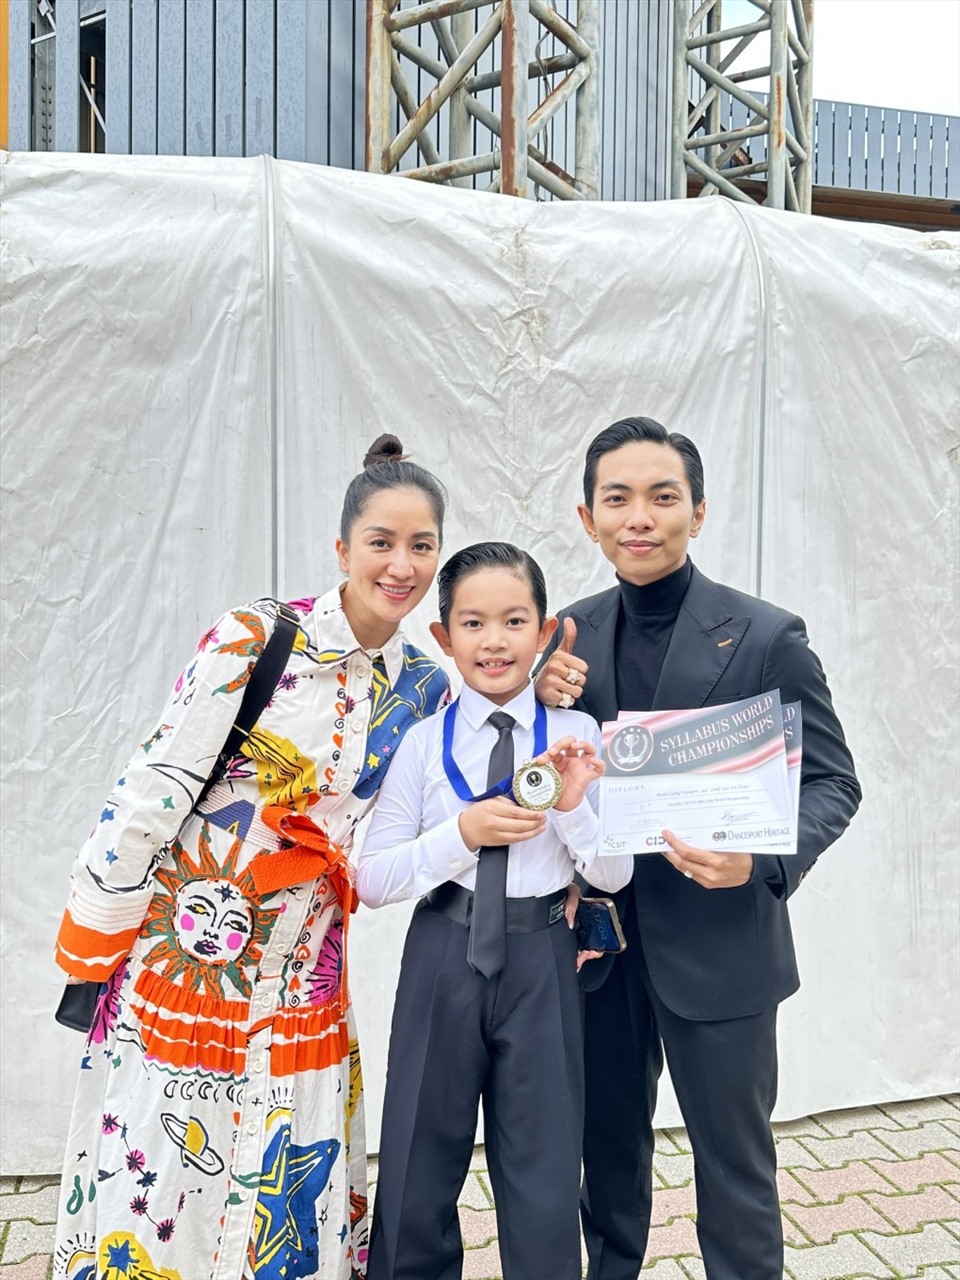 Con trai Khánh Thi - Phan Hiển giành giải Vô địch thế giới hạng thiếu nhi 1 (6-9 tuổi) ở cuộc thi Syllabus World Championship hôm 26.3. Ảnh: Nhân vật cung cấp